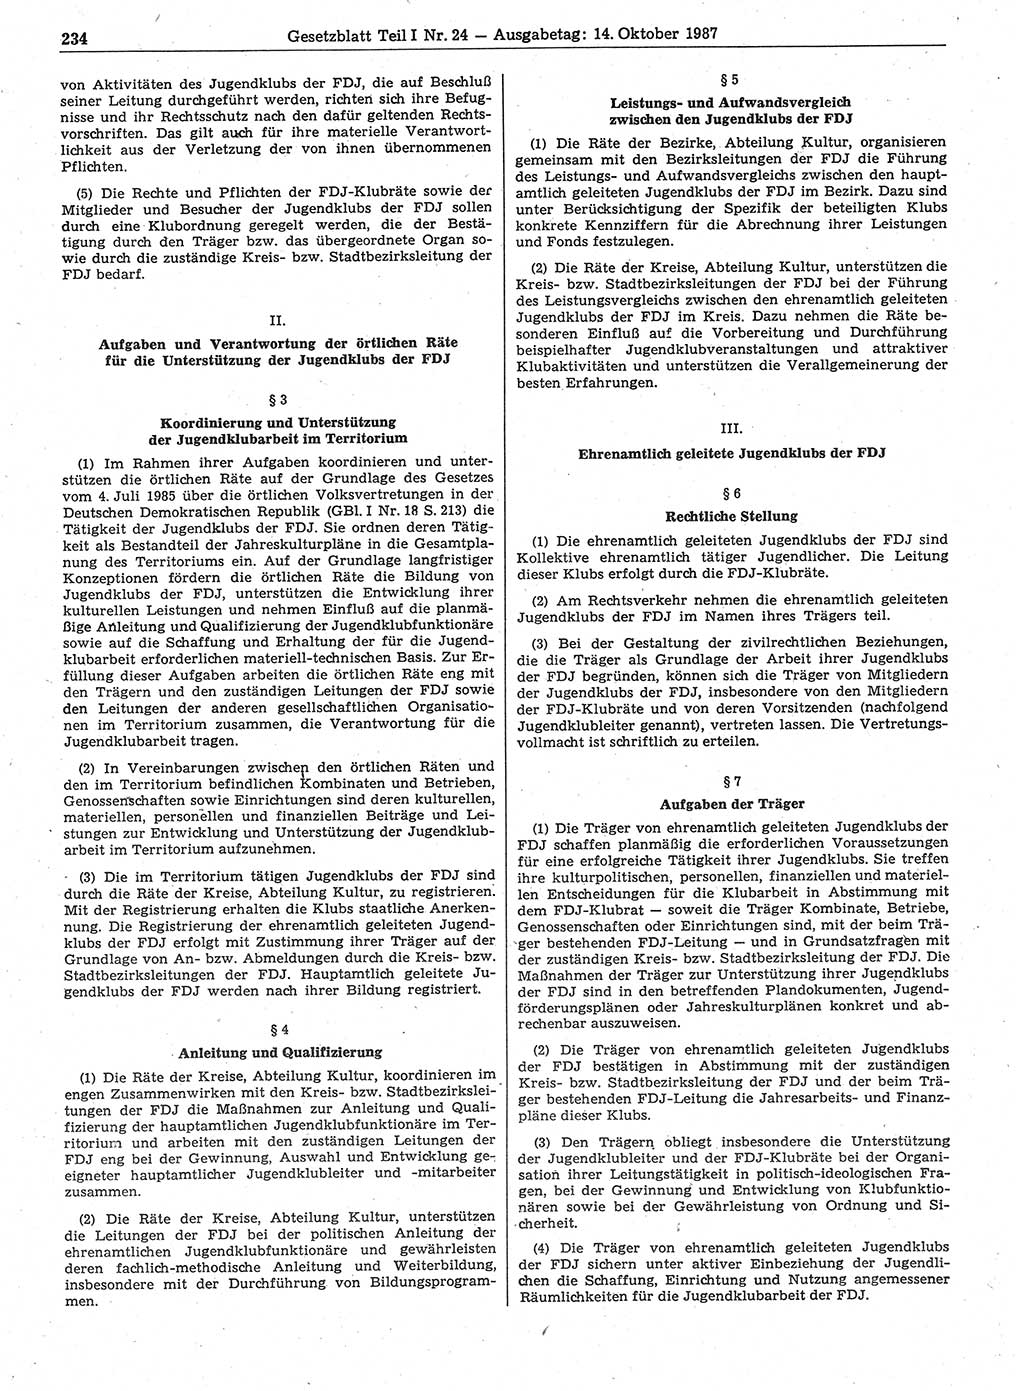 Gesetzblatt (GBl.) der Deutschen Demokratischen Republik (DDR) Teil Ⅰ 1987, Seite 234 (GBl. DDR Ⅰ 1987, S. 234)